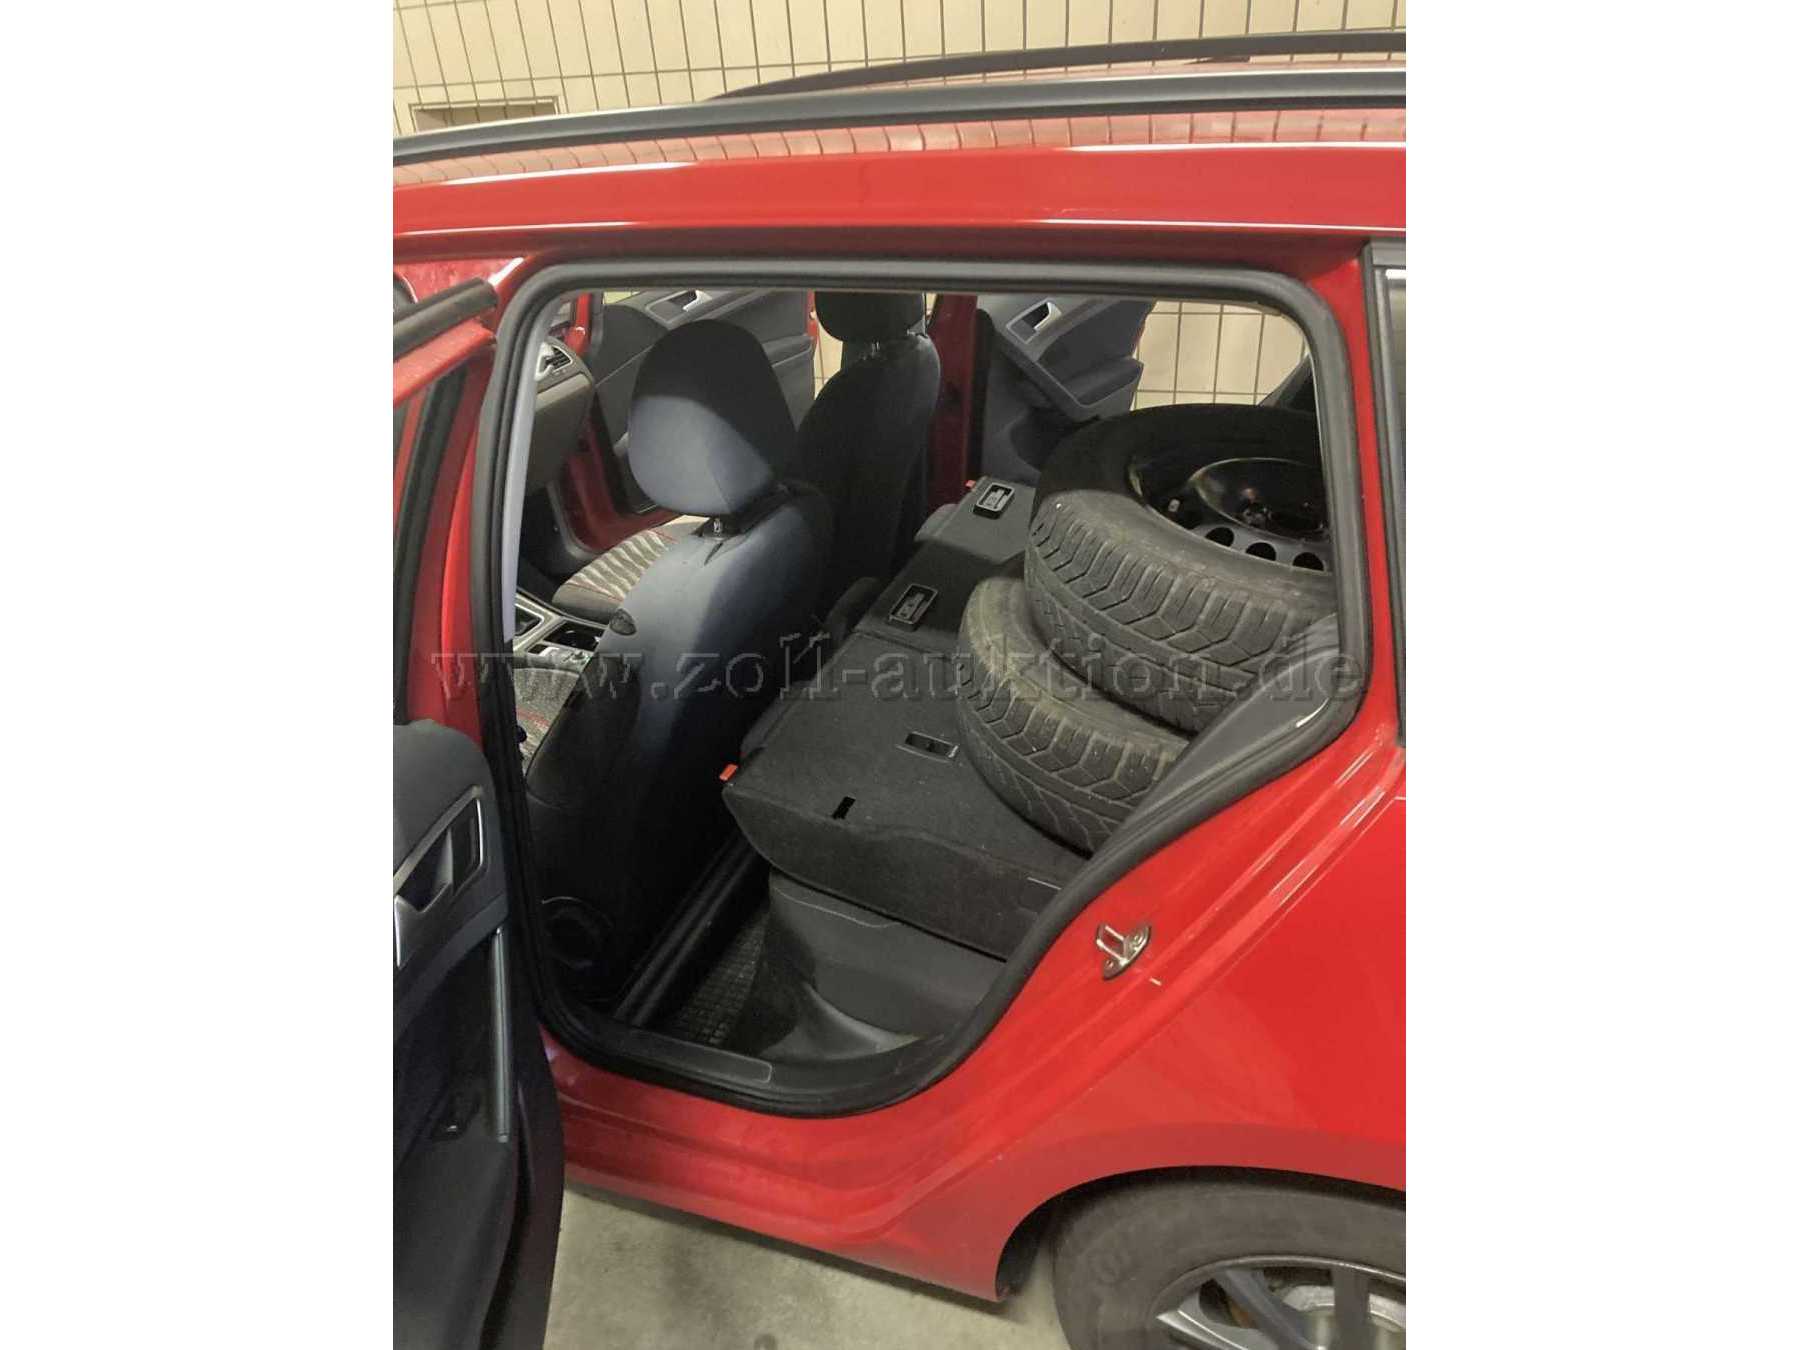 Fahrgastraum Fahrerseite -Rücksitzbank umgeklappt mit zweitem Reifensatz